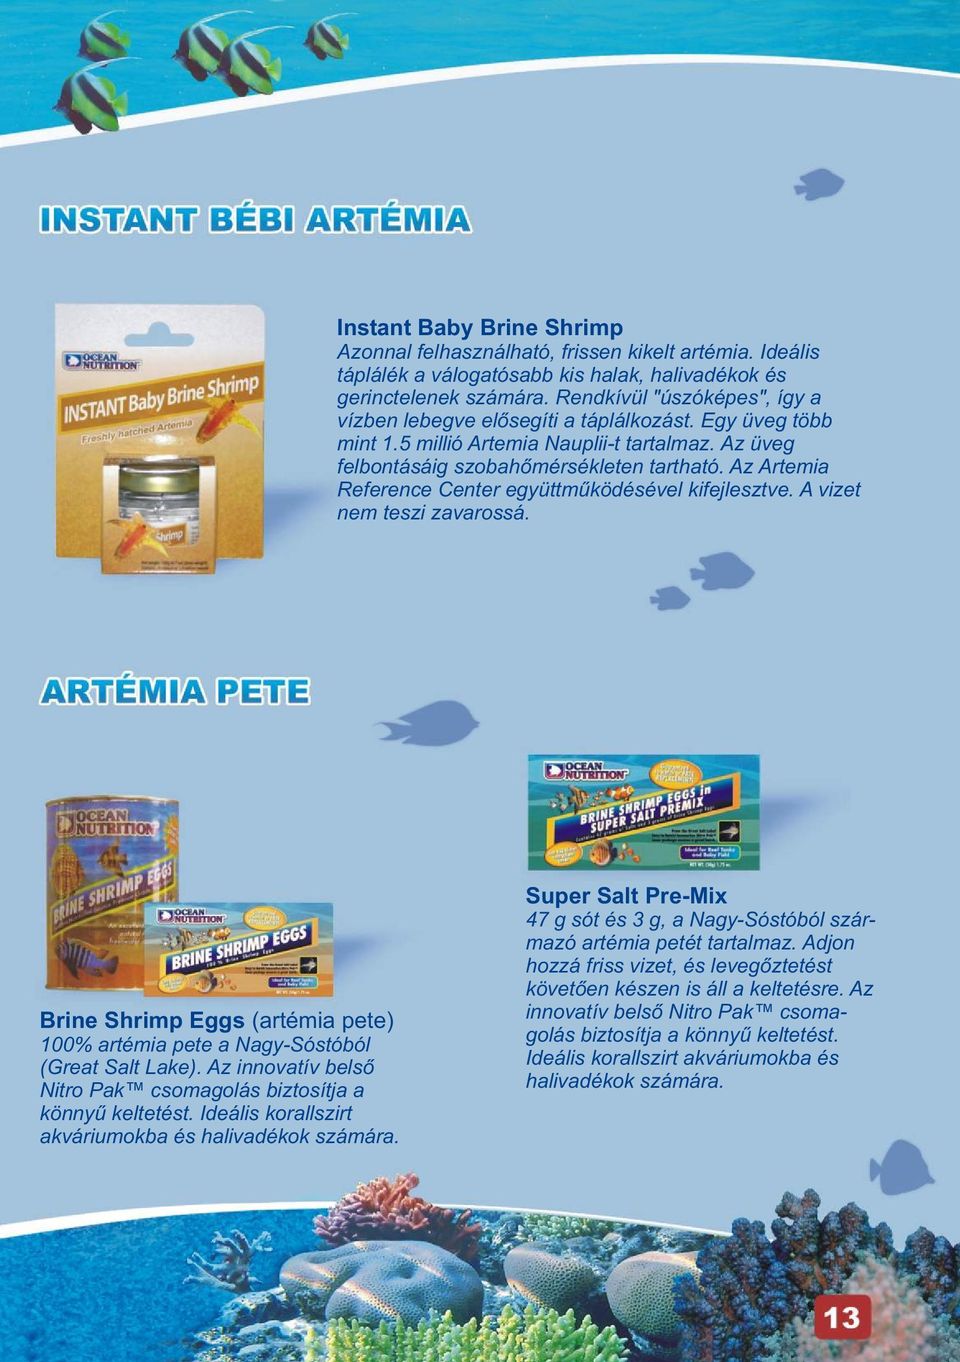 Az Artemia Reference Center együttmûködésével kifejlesztve. A vizet nem teszi zavarossá. Brine Shrimp Eggs (artémia pete) 100% artémia pete a Nagy-Sóstóból (Great Salt Lake).